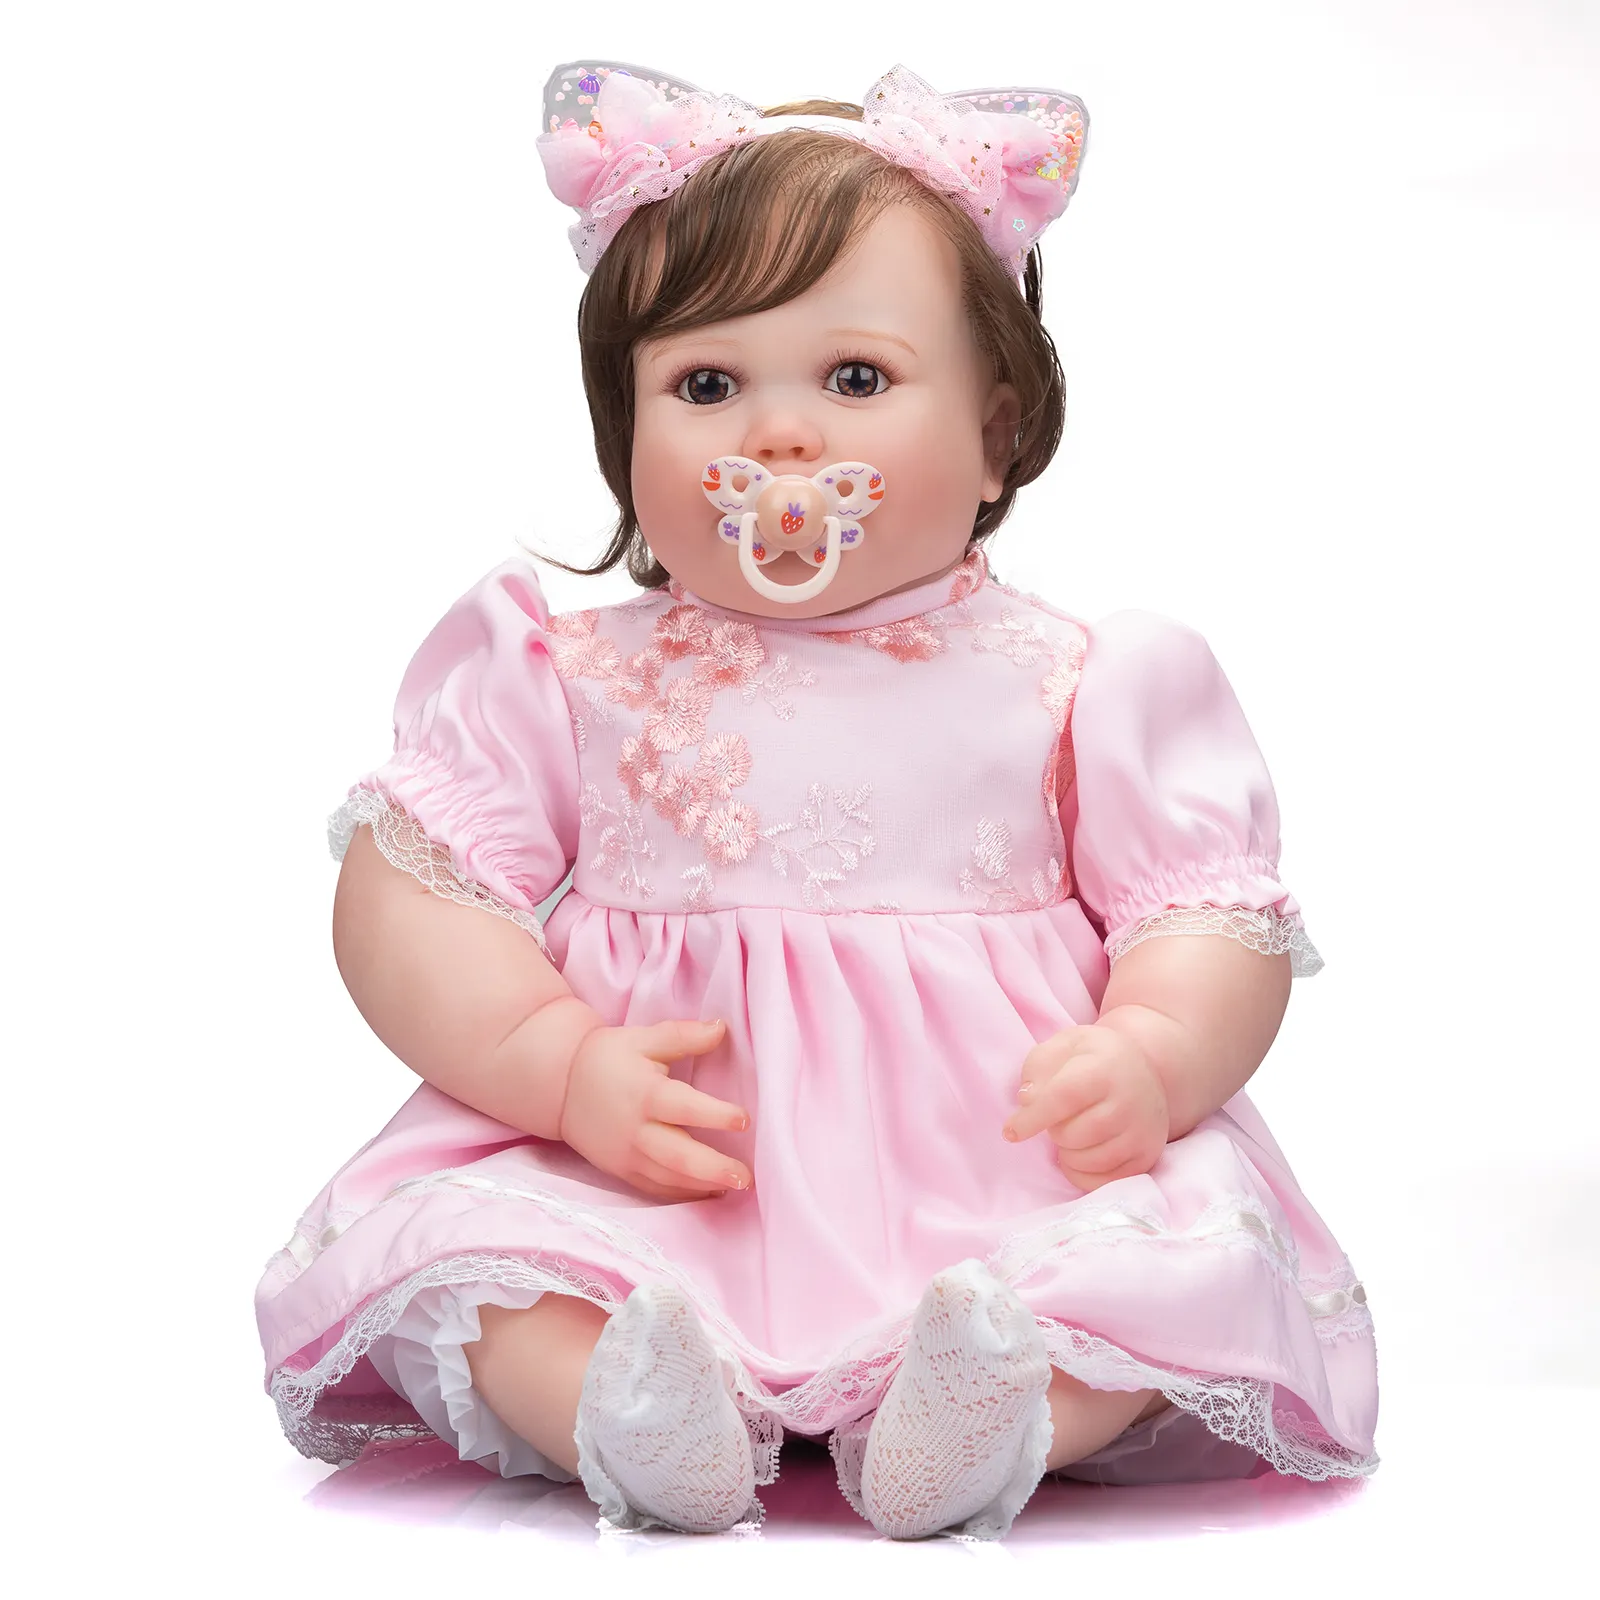 Npk-poupée énorme de 60CM pour filles, peinture 3D réaliste, taille réelle bébé, avec veines invisibles, poupées à collectionner pour enfants